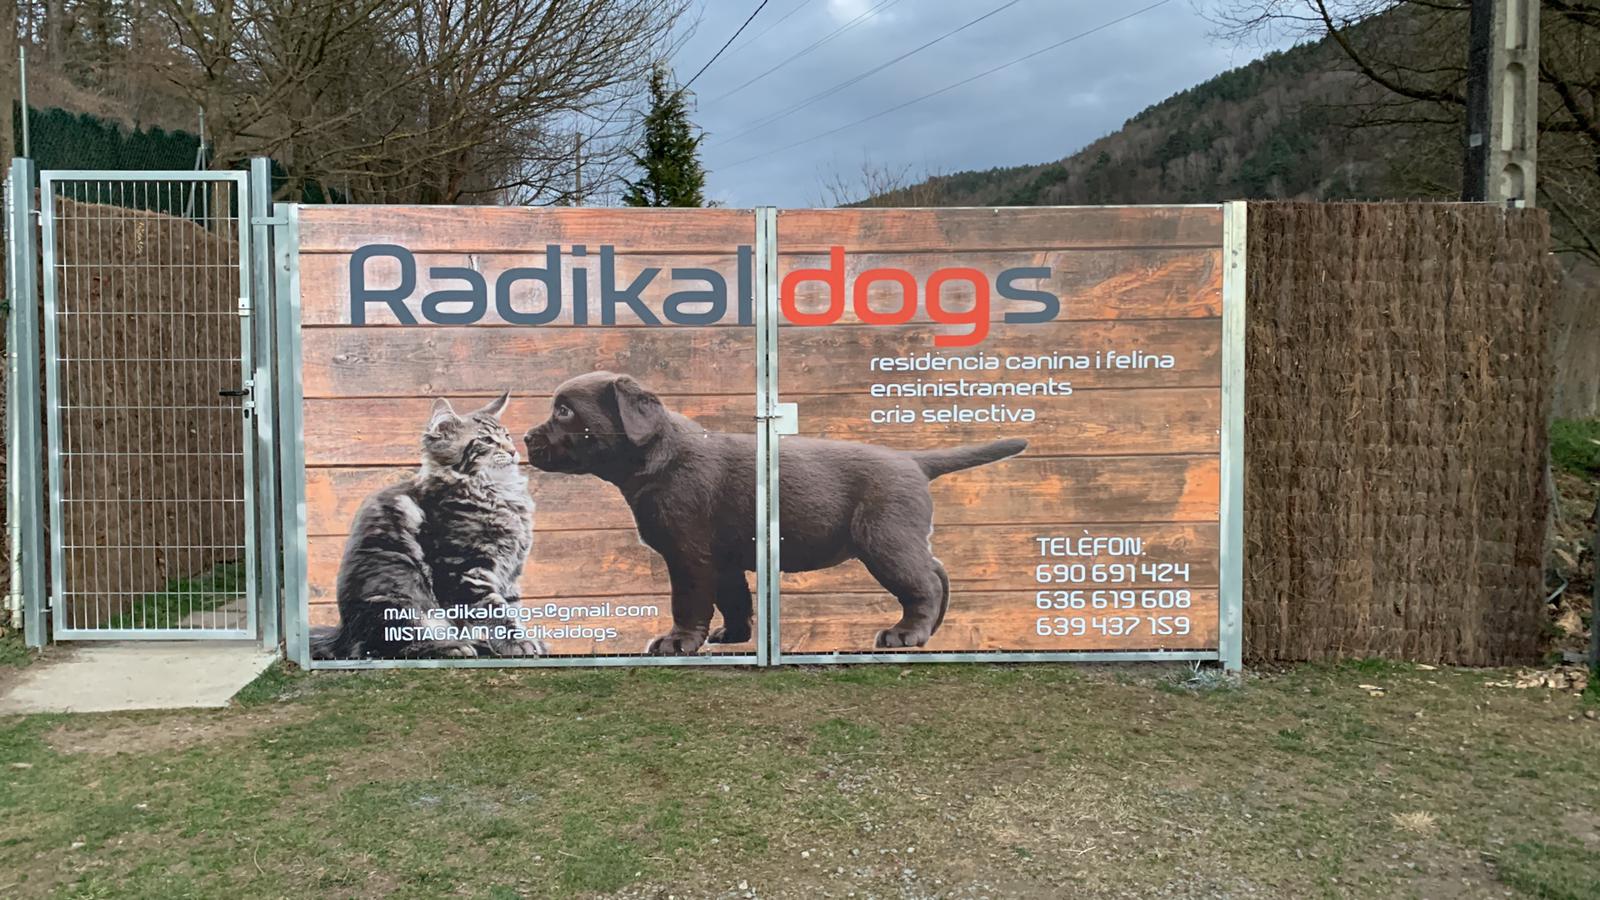 Entrance to the Radikaldogs Canine and Feline Residence